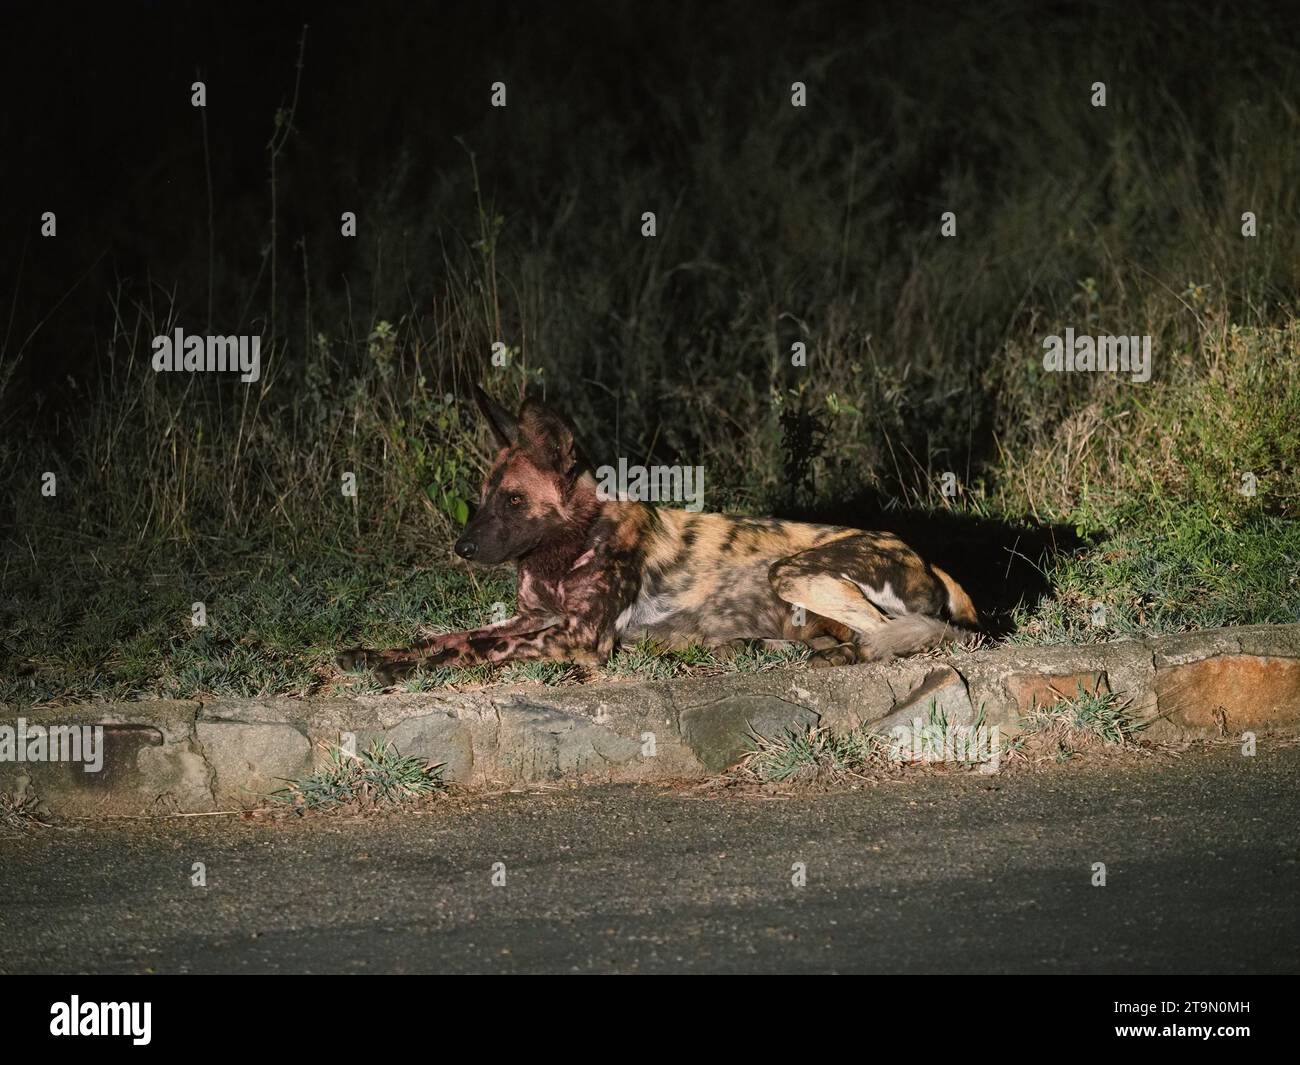 Chien sauvage africain (lycaon pictus) ou chien peint, au bord de la route le soir. Ils sont extrêmement rares. Parc national Kruger, Afrique du Sud Banque D'Images